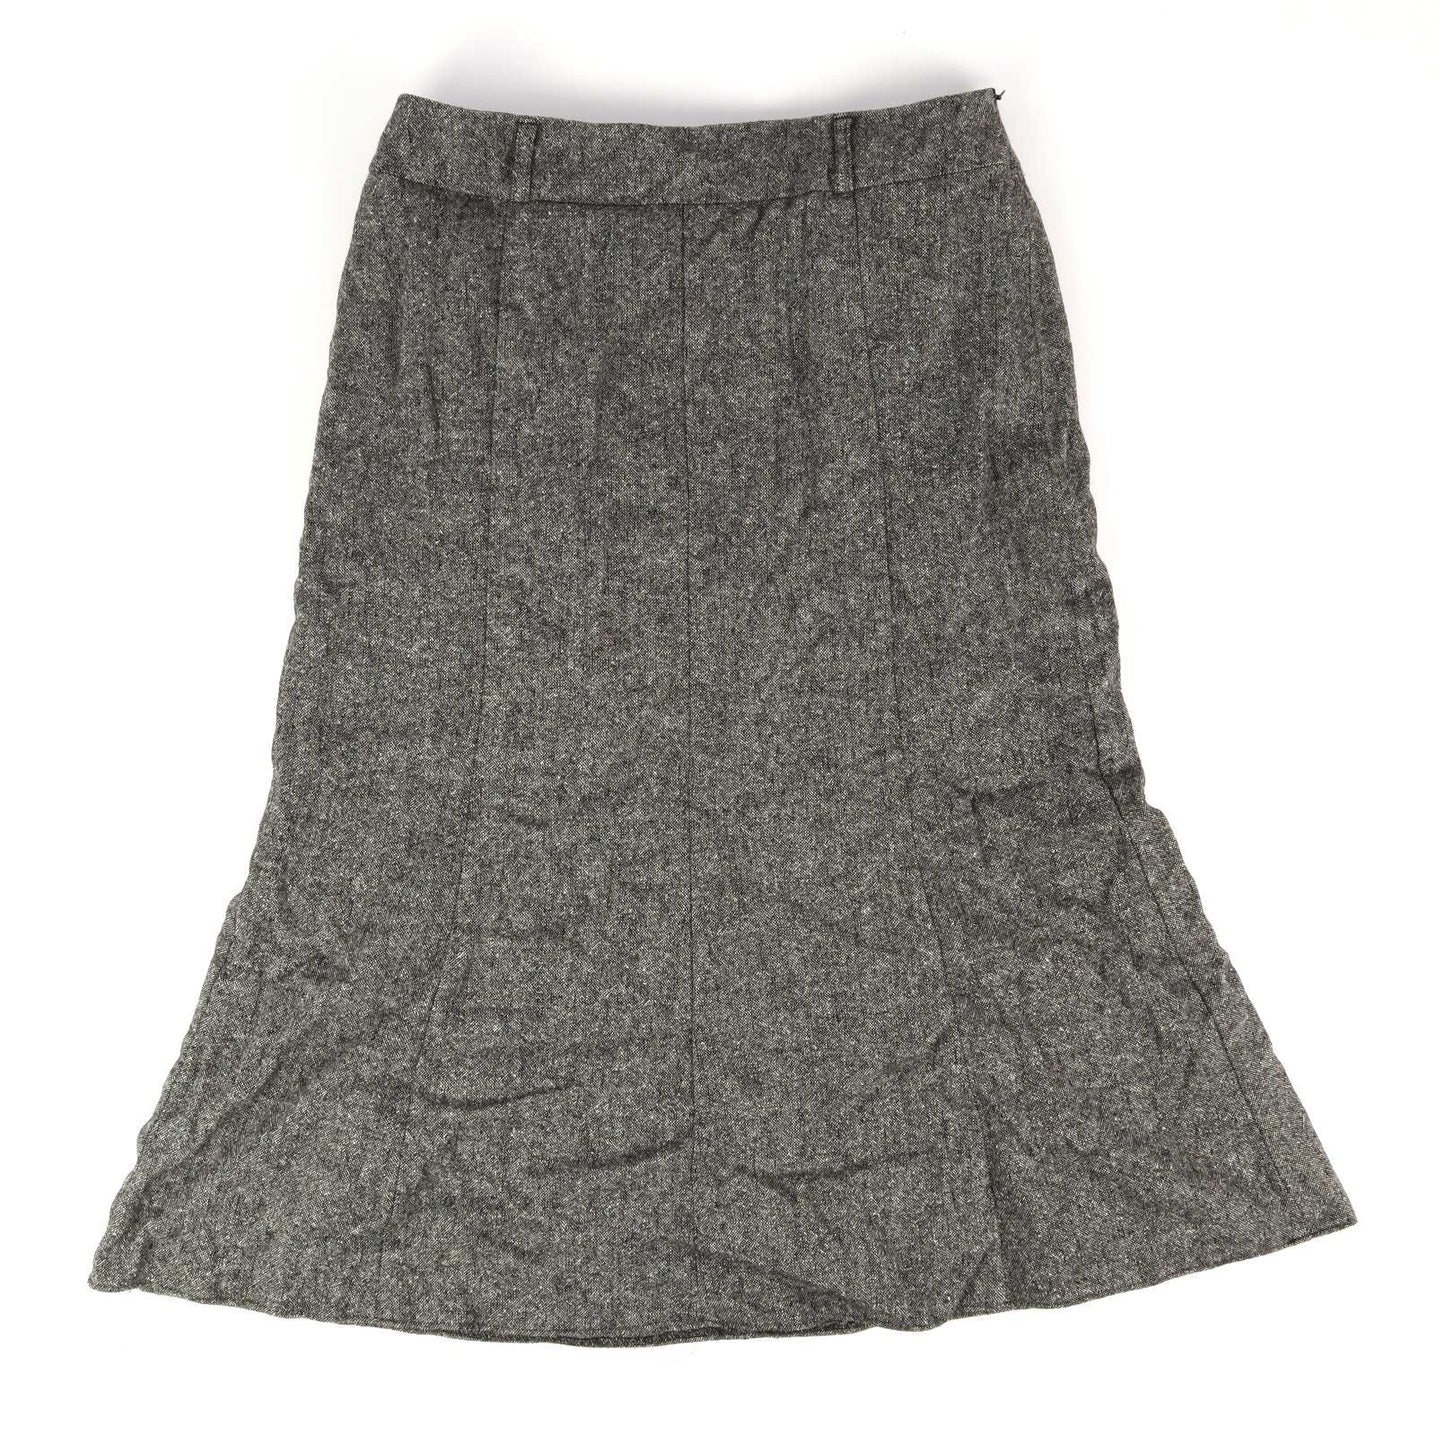 Gerry Weber Womens Size 12 Grey Textured Silk Blend Skirt (Regular)